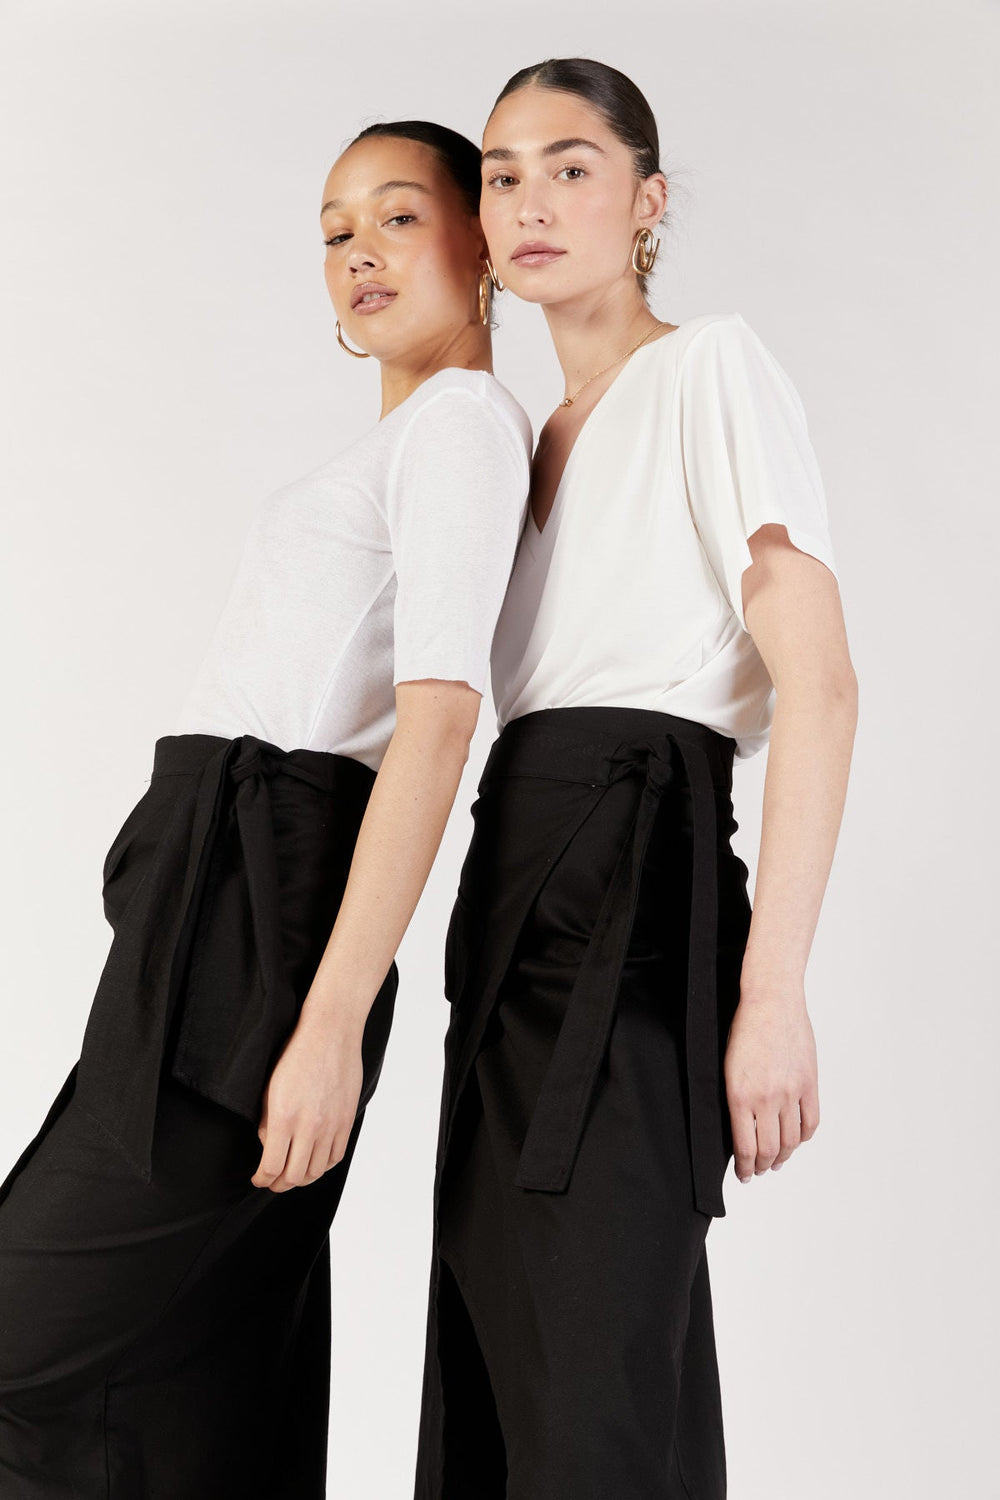 חצאית מעטפת קברנה בצבע שחור - Razili Studio